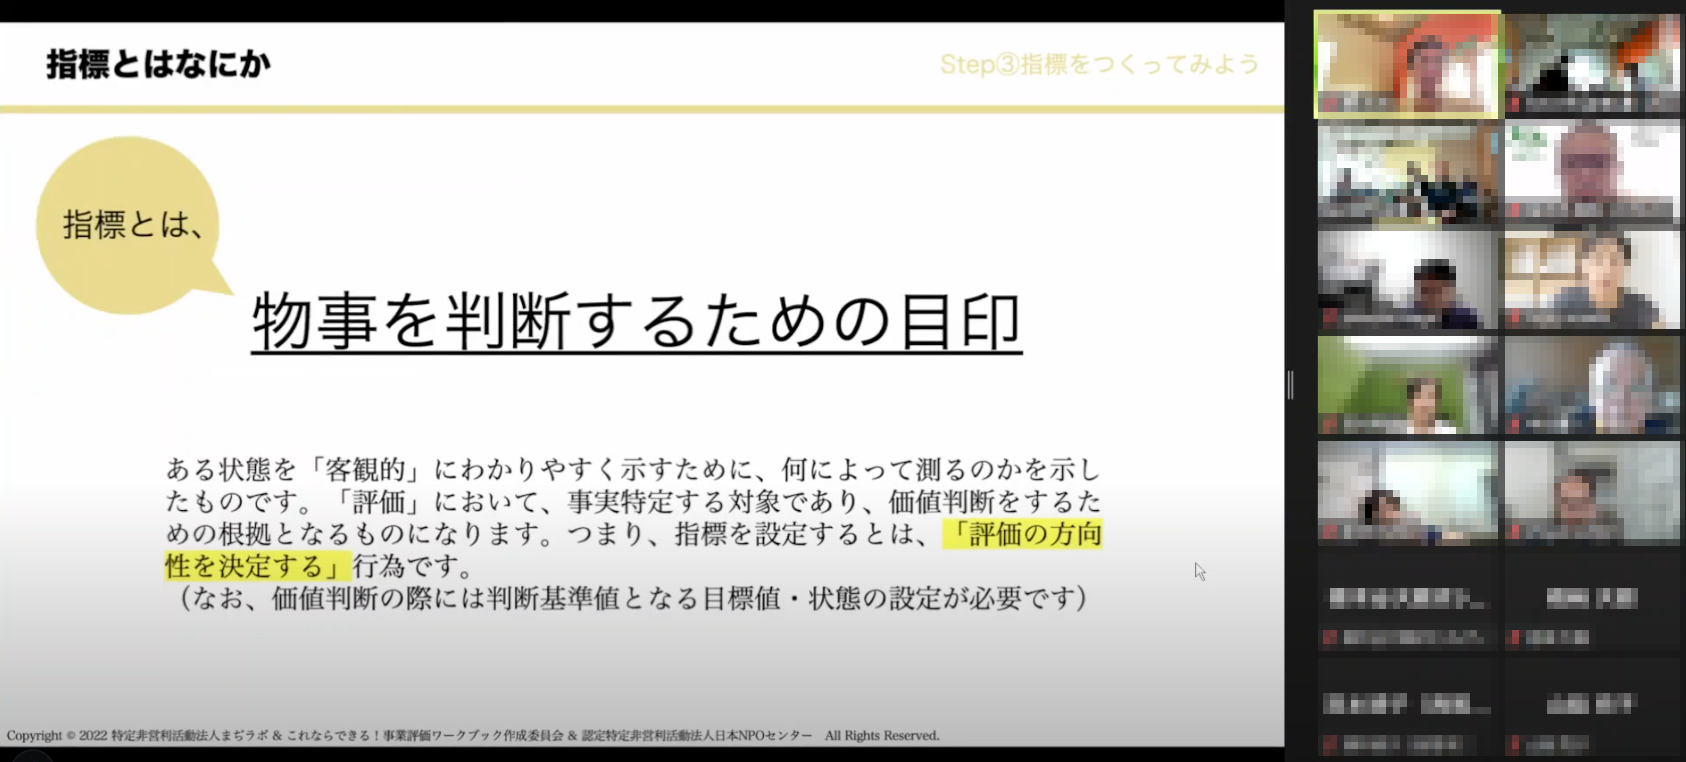 【報告】事業評価オープンセミナーin福島